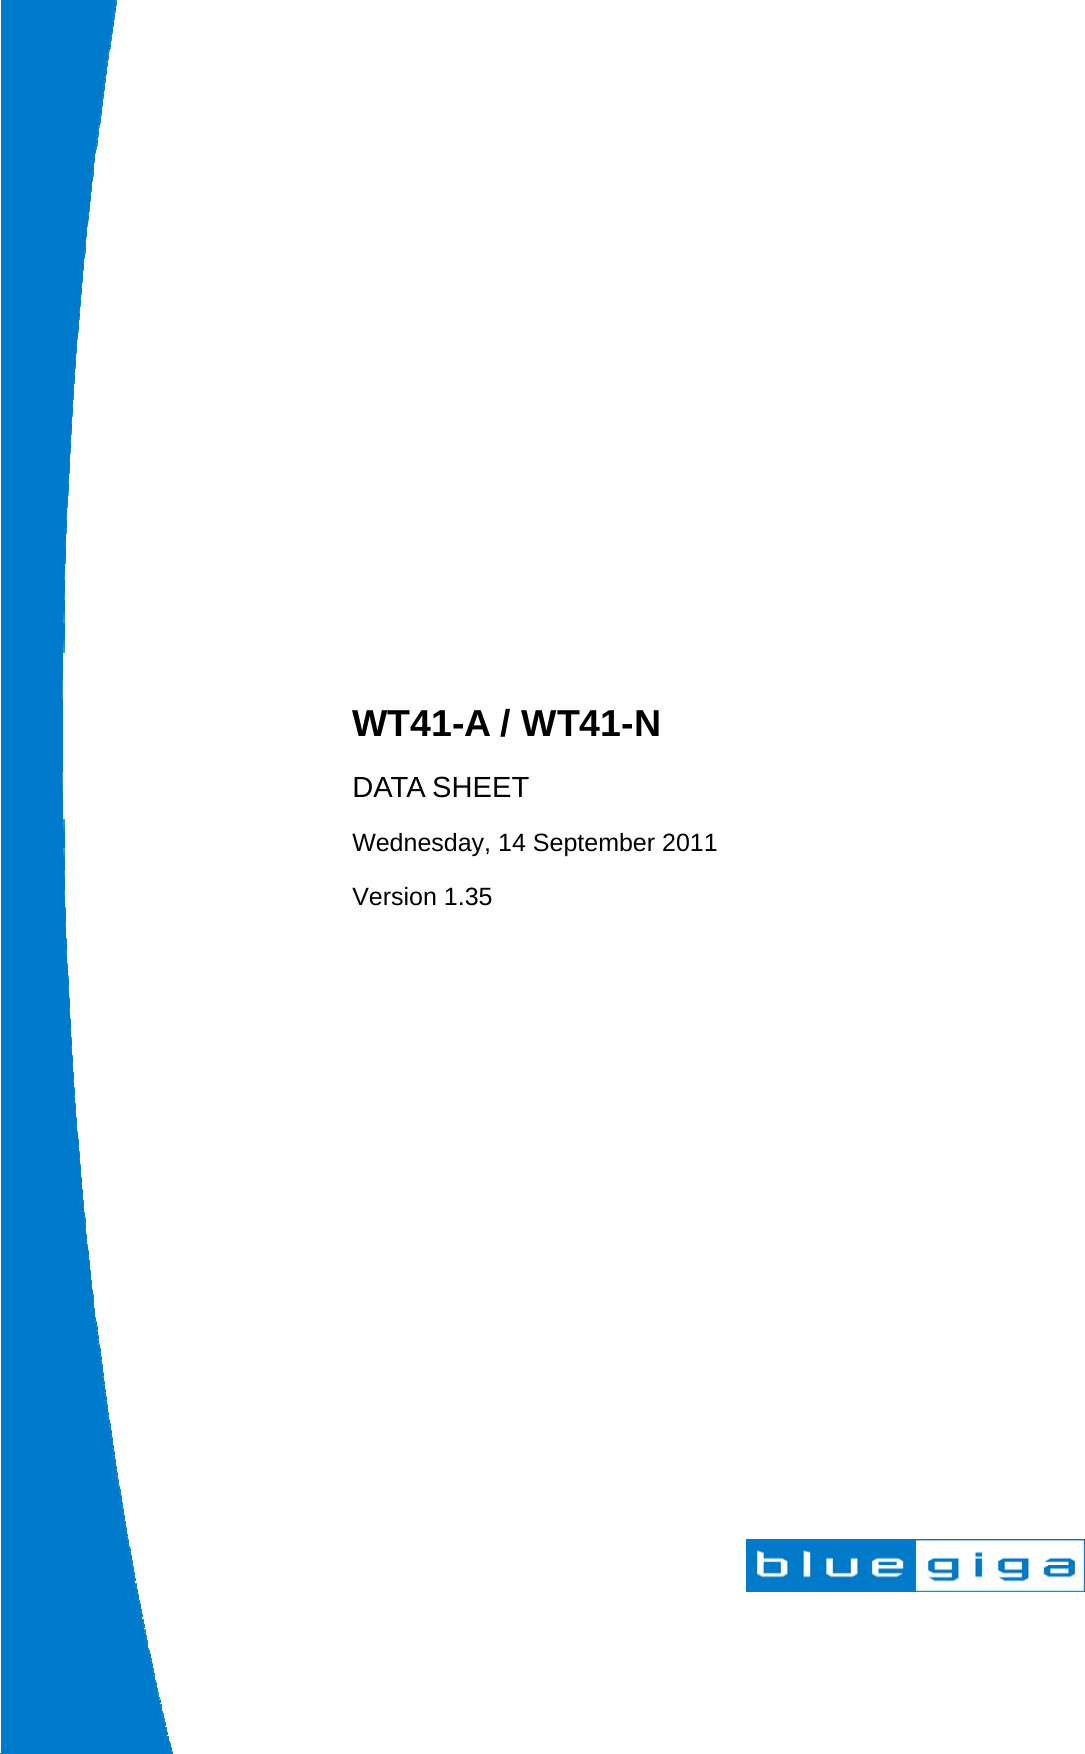                      WT41-A / WT41-N DATA SHEET Wednesday, 14 September 2011 Version 1.35 